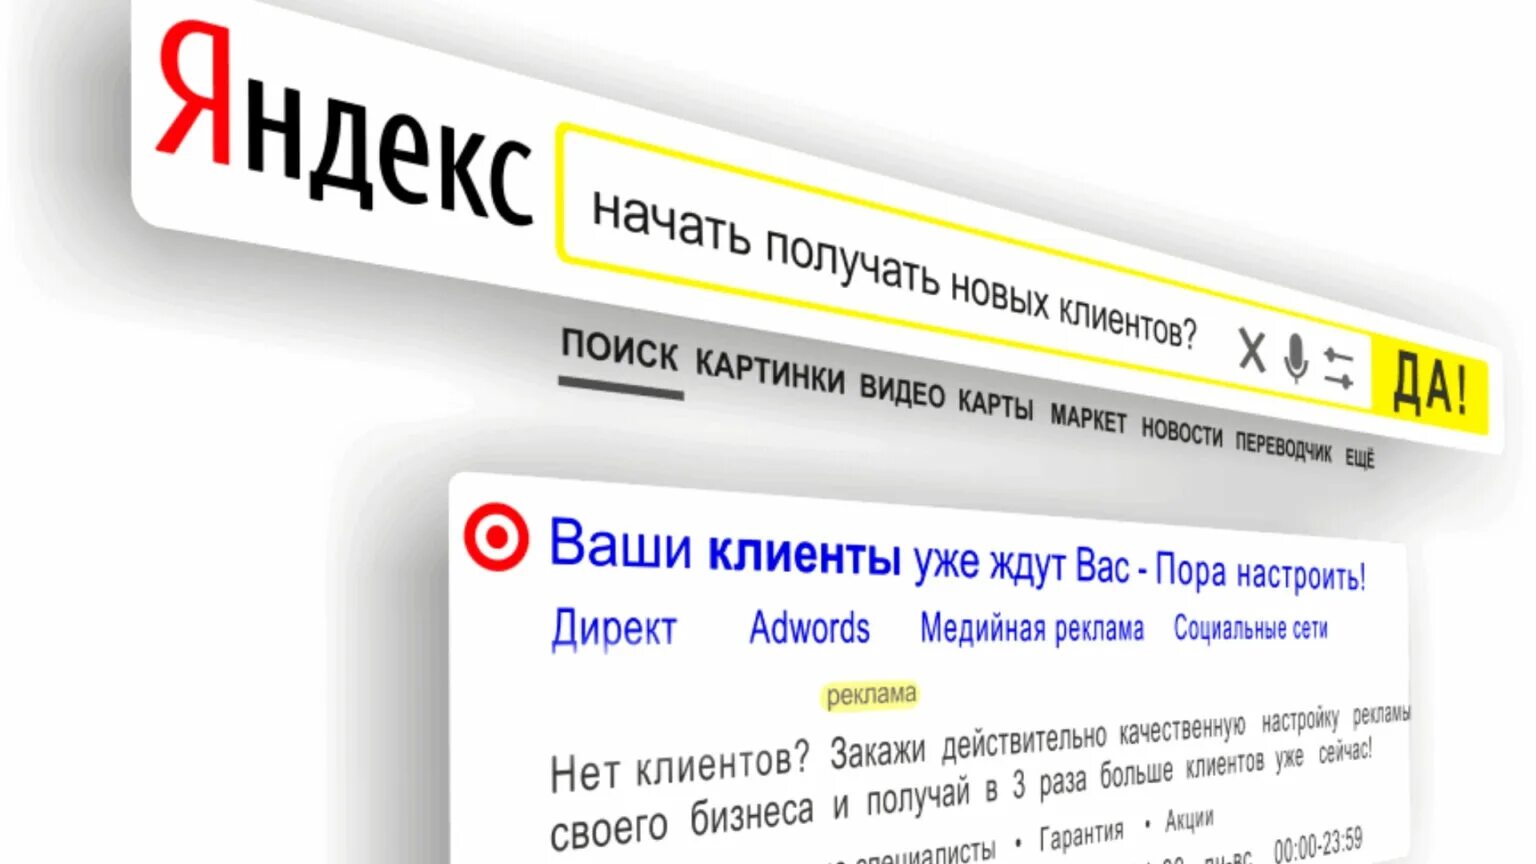 Поисковая строка яндекса картинка. Контекстная реклама. Поисковая строка Яндекса.